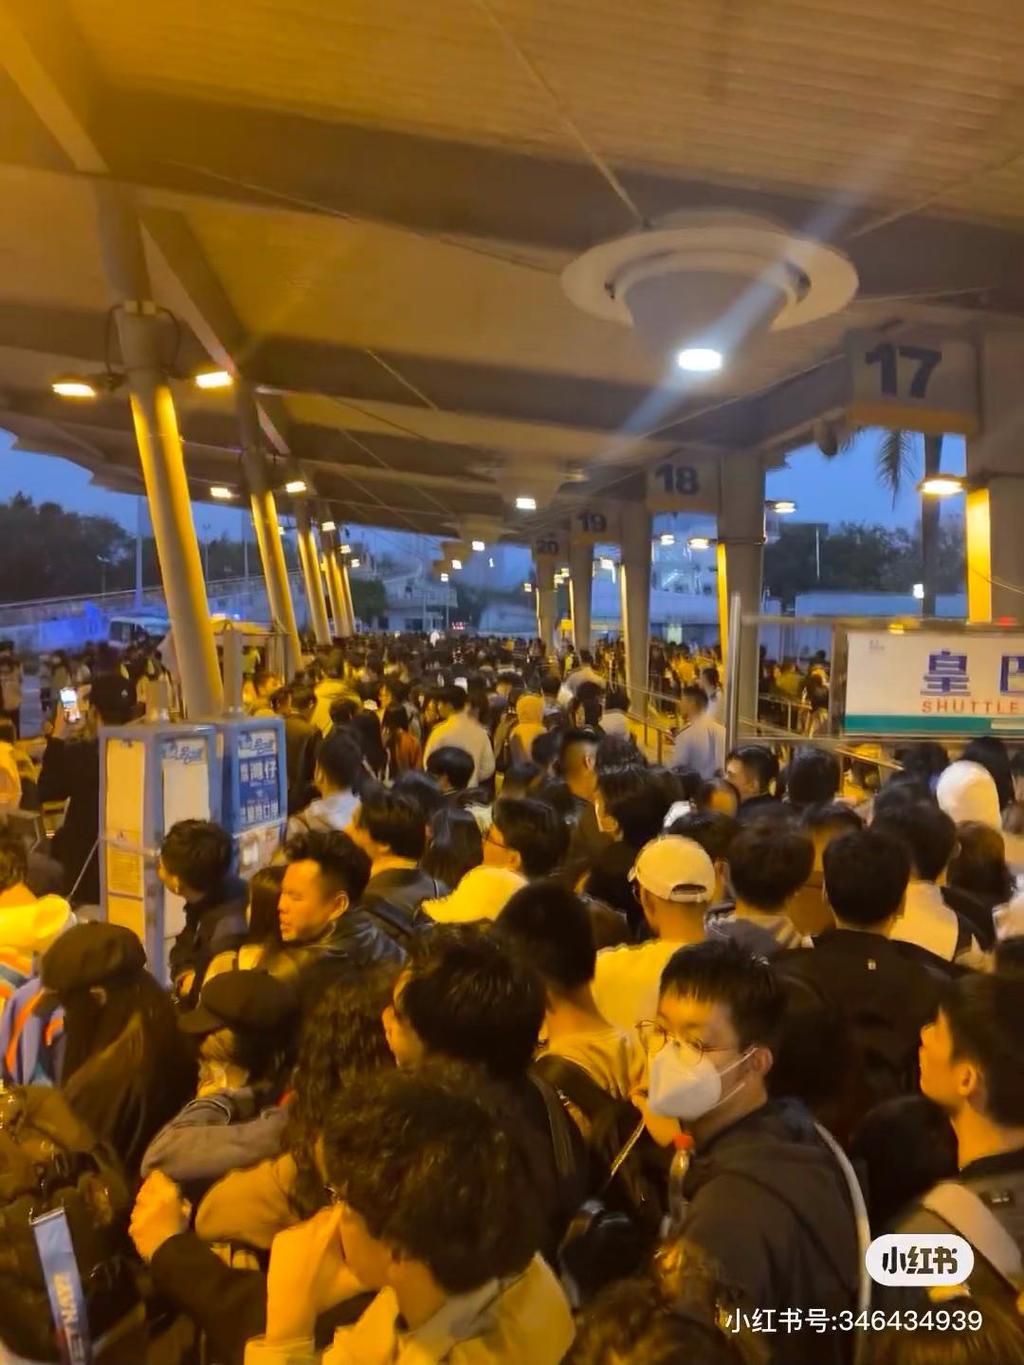 皇崗邊檢站執勤民警就查驗入境深圳旅客近4.5萬人次。小紅書圖片